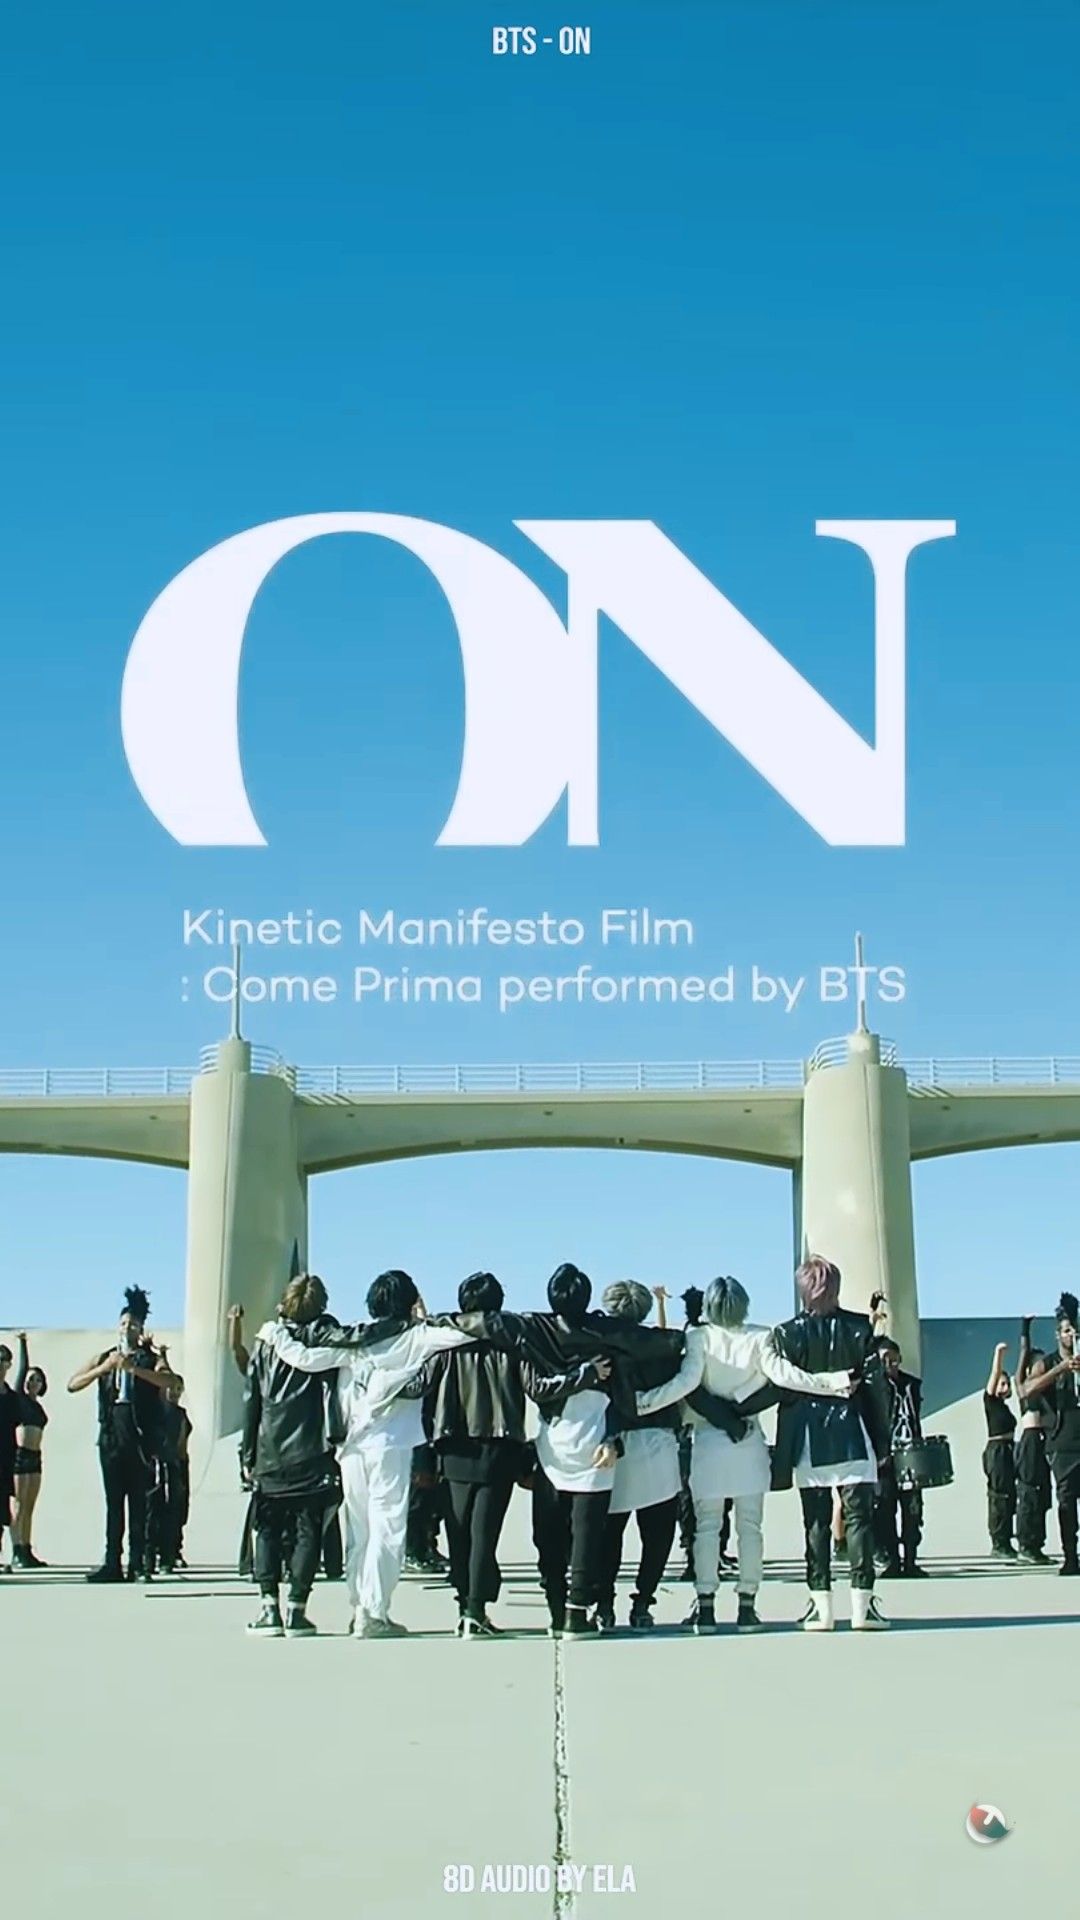 btson#on#bts. Manifesto film, Bts, Bts wallpaper